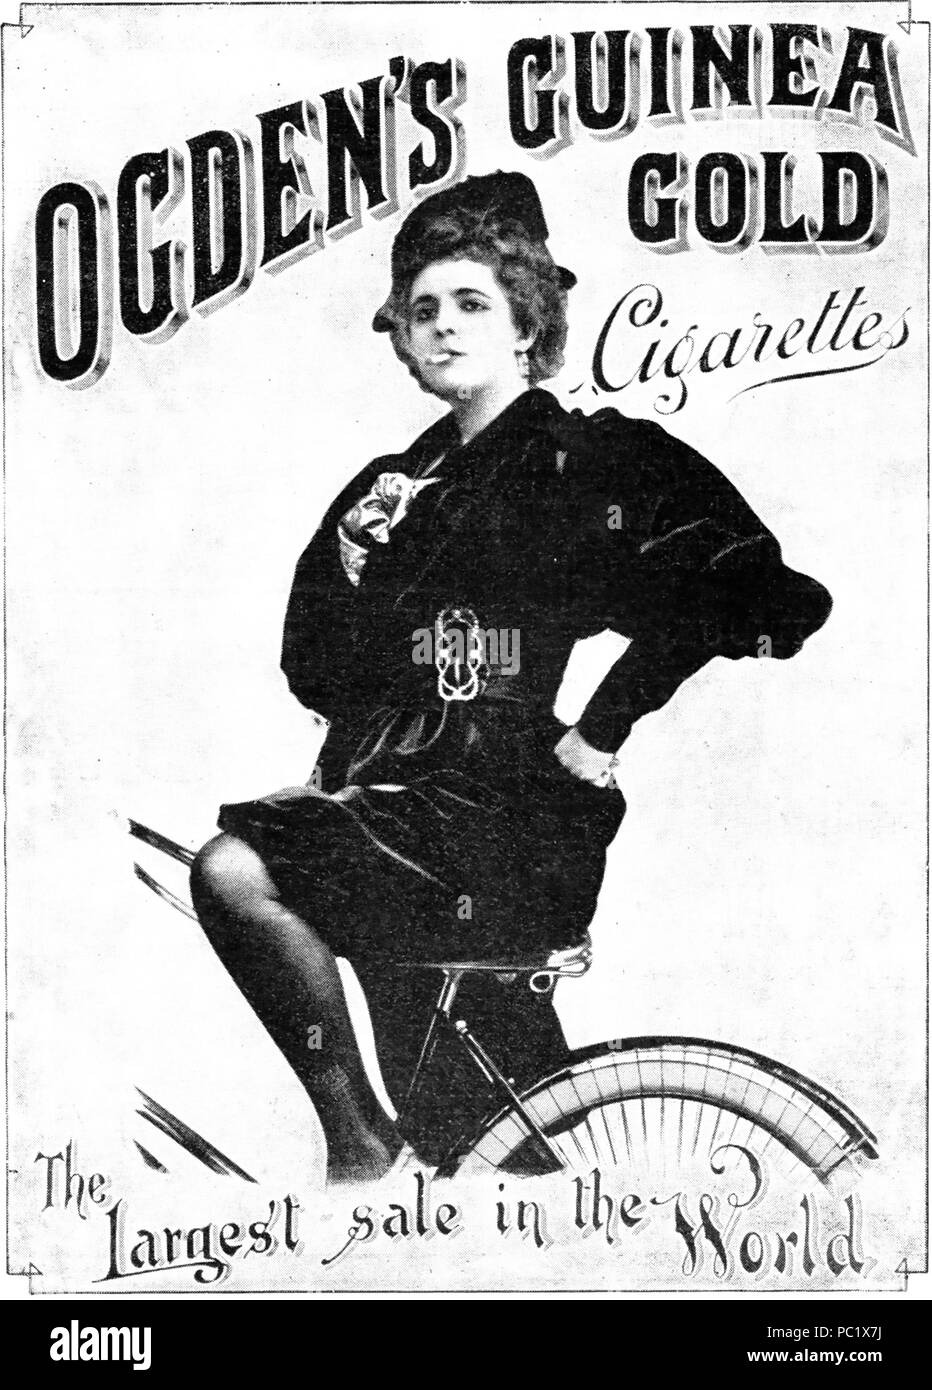 OGDEN LA GUINEA sigaretta oro annuncio circa 1890. Un marchio che normalmente hanno mostrato di royalty, i politici e gli sportivi nella sua pubblicità e carte Foto Stock